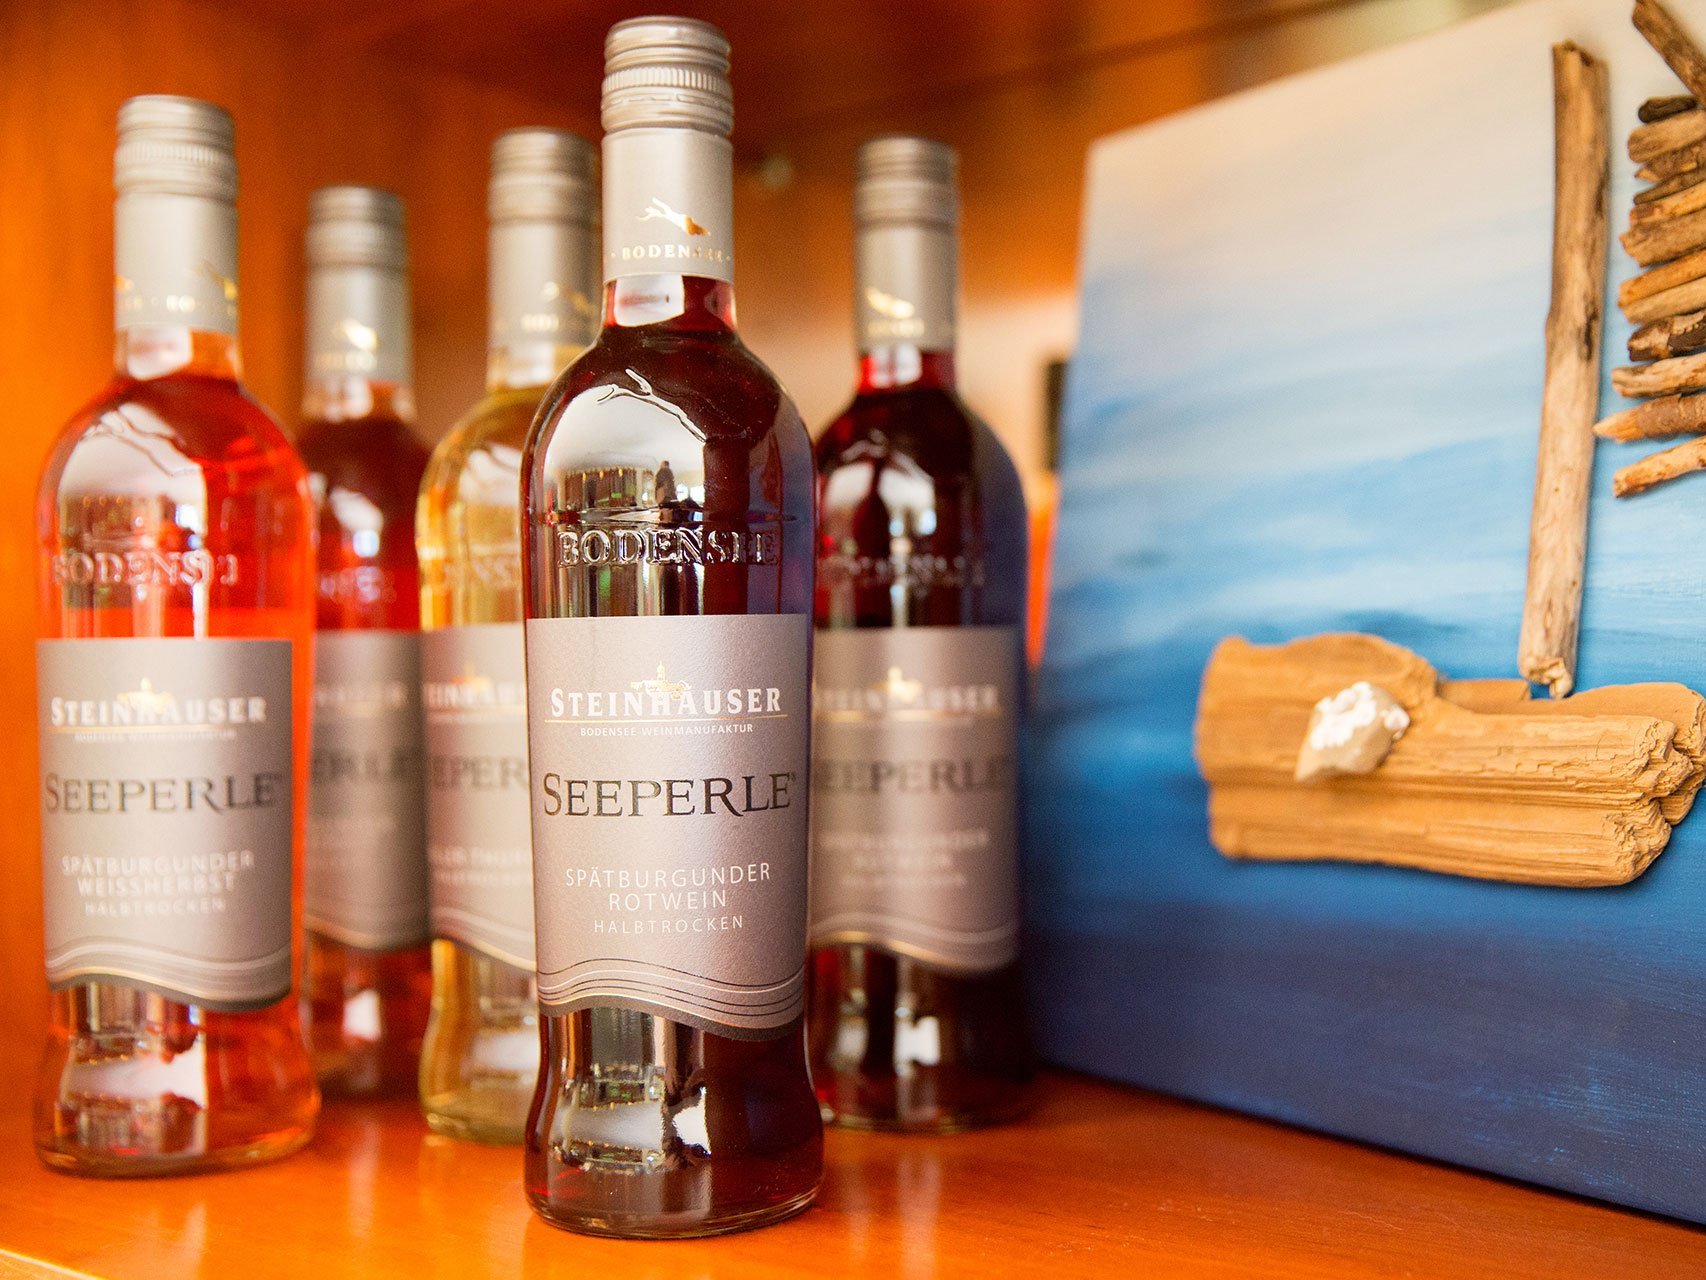 Mehrere Flaschen Rotwein aus dem Hottel Seeperle stehen nebeneinander im Regal.